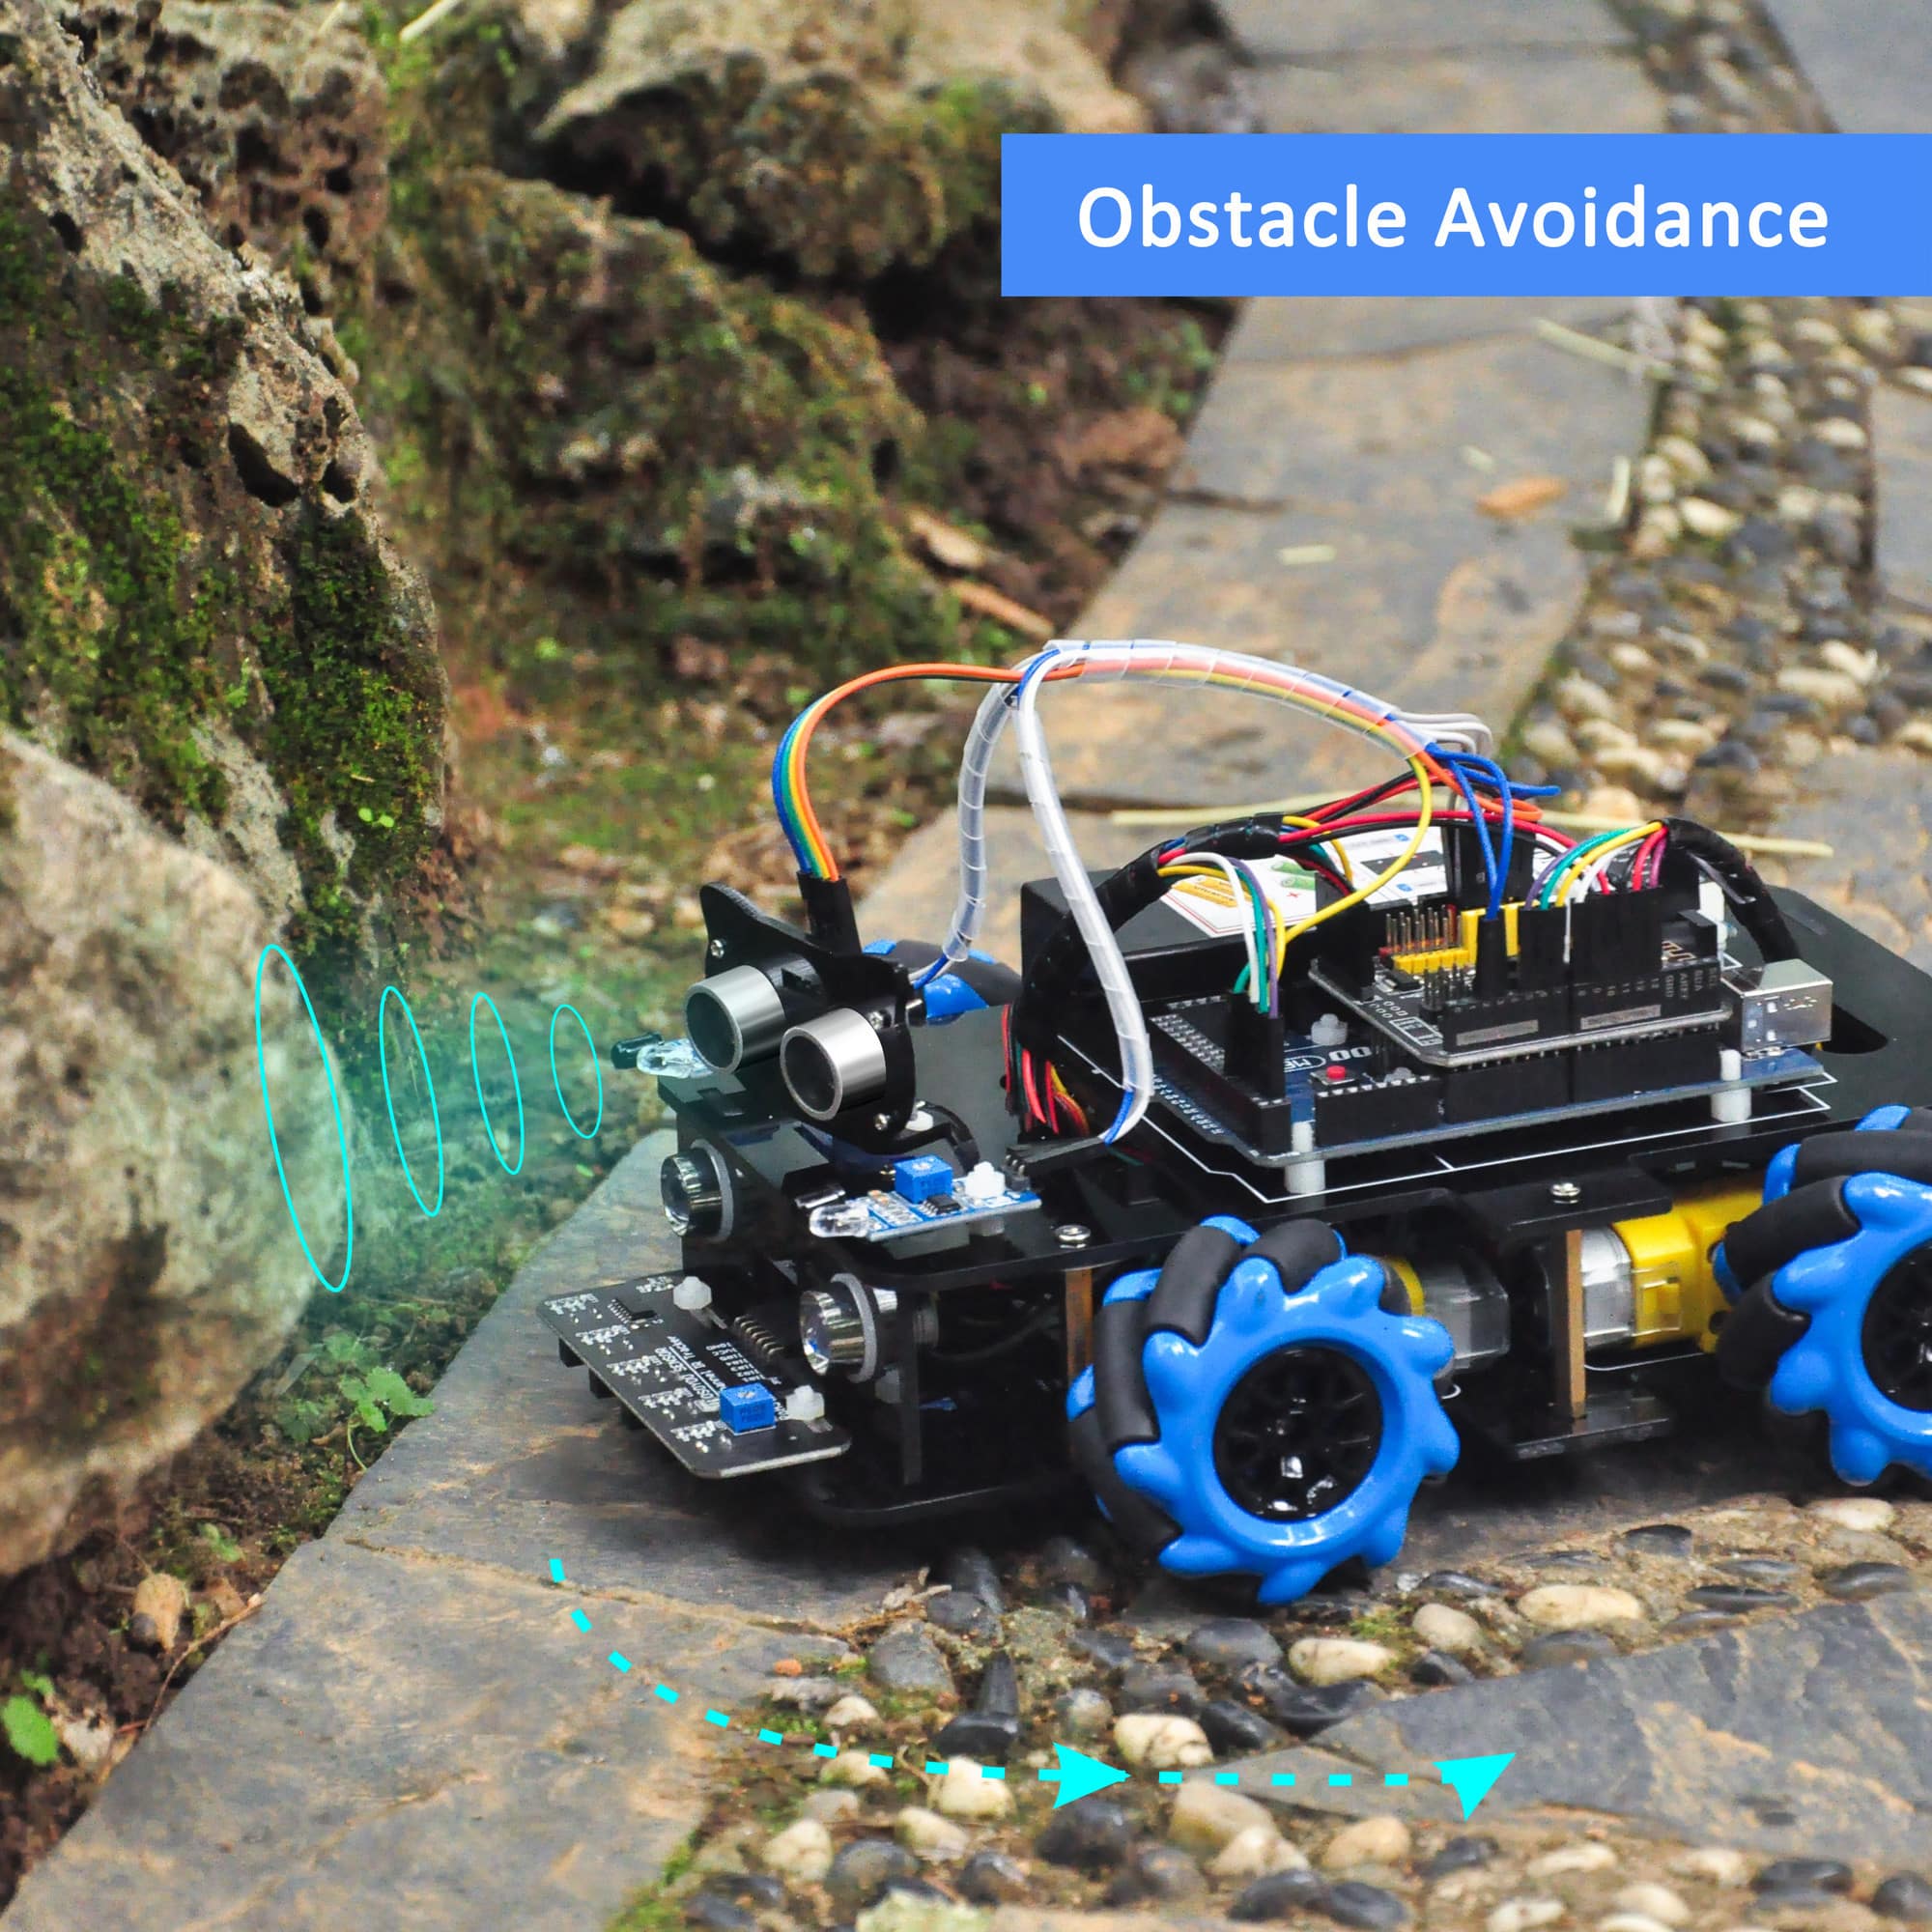 V2.0 Mecanum Wheel Robotic Kit for Arduino Mega2560-Lesson 2 Obstacle Avoidance Robot Car